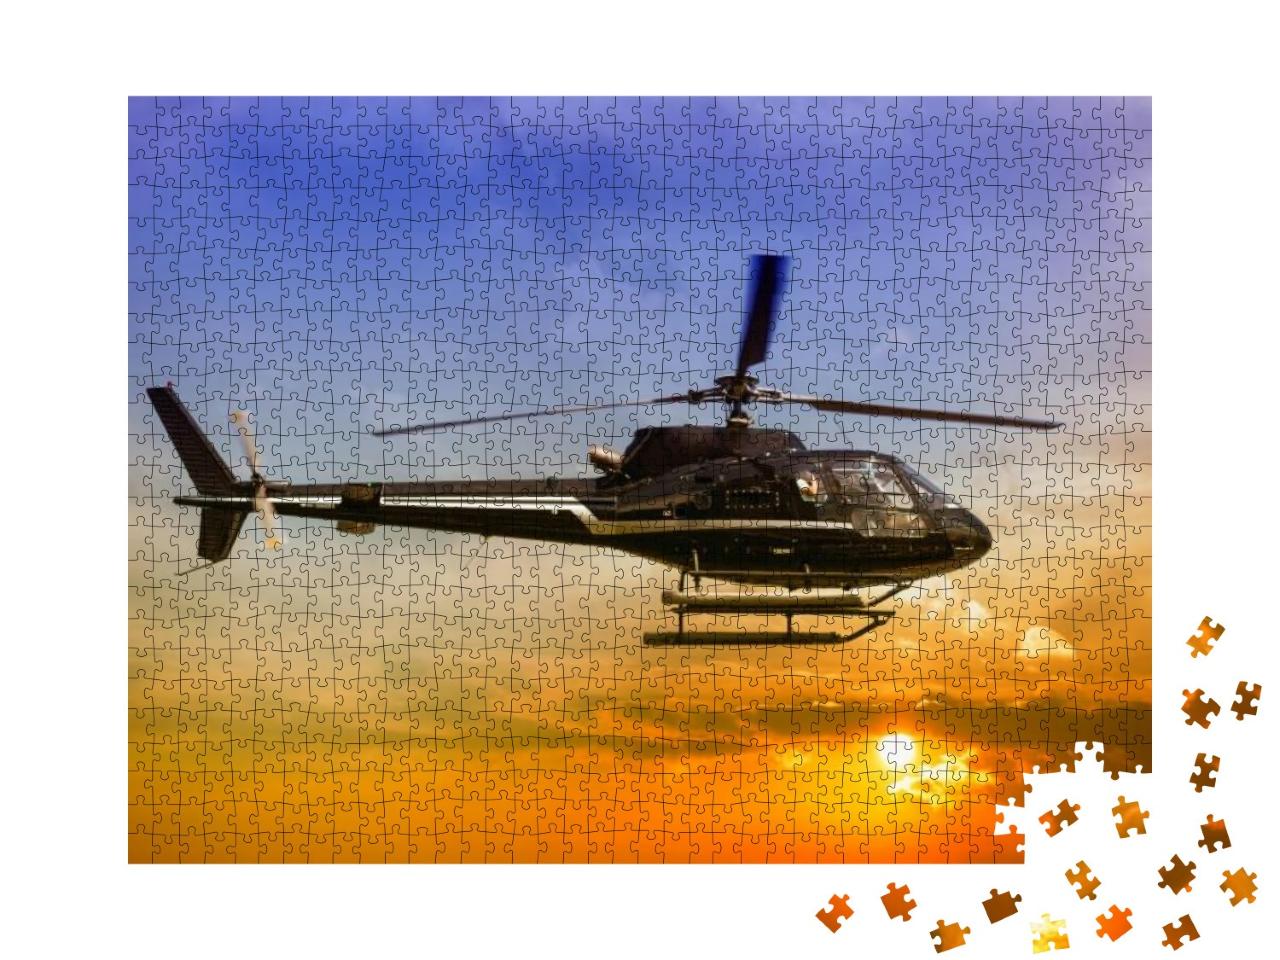 Puzzle 1000 Teile „Hubschrauber für Sightseeing“